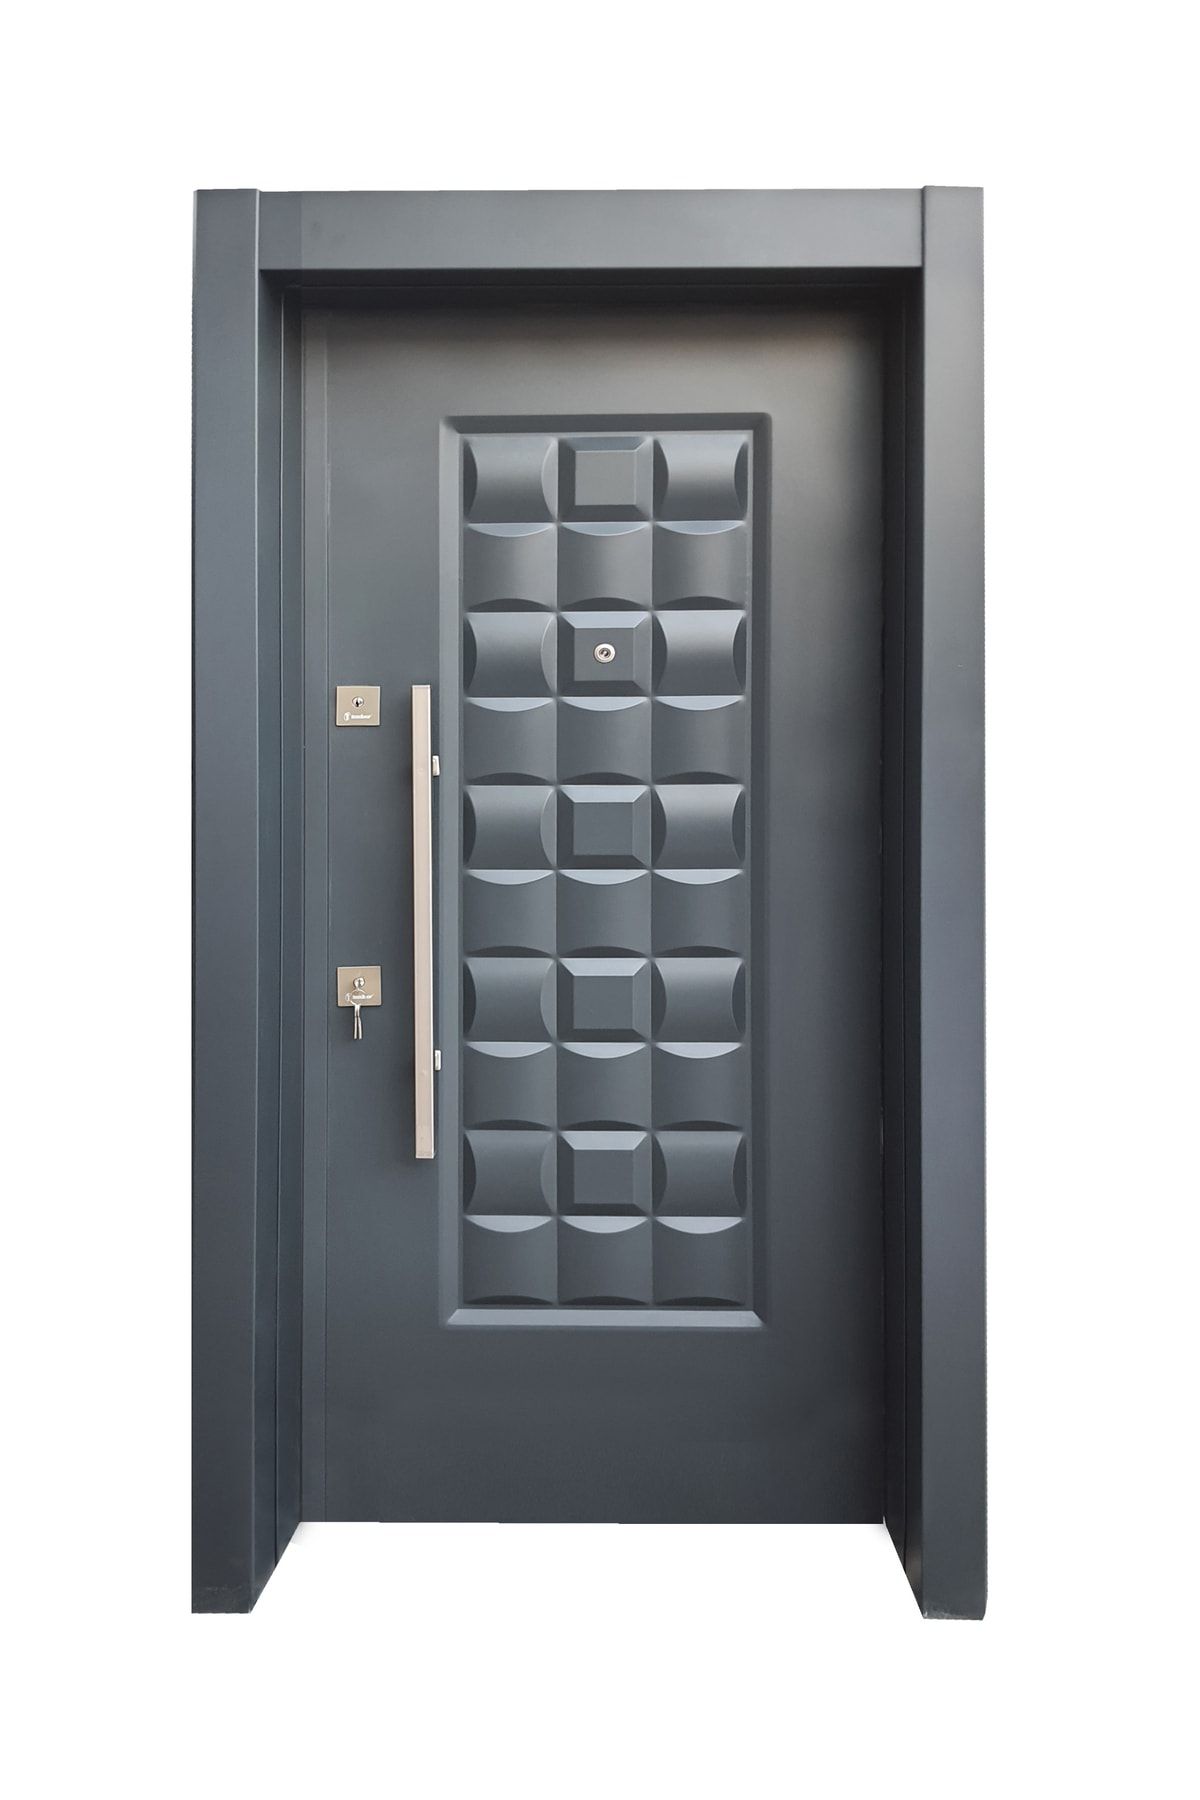 Tezdoor Sac Celik Kapi Tırnaklı Sistem Çelik Kapı, Ahşap Kaplama Kabartmalı Model Daire Kapısı Sağ Açılım